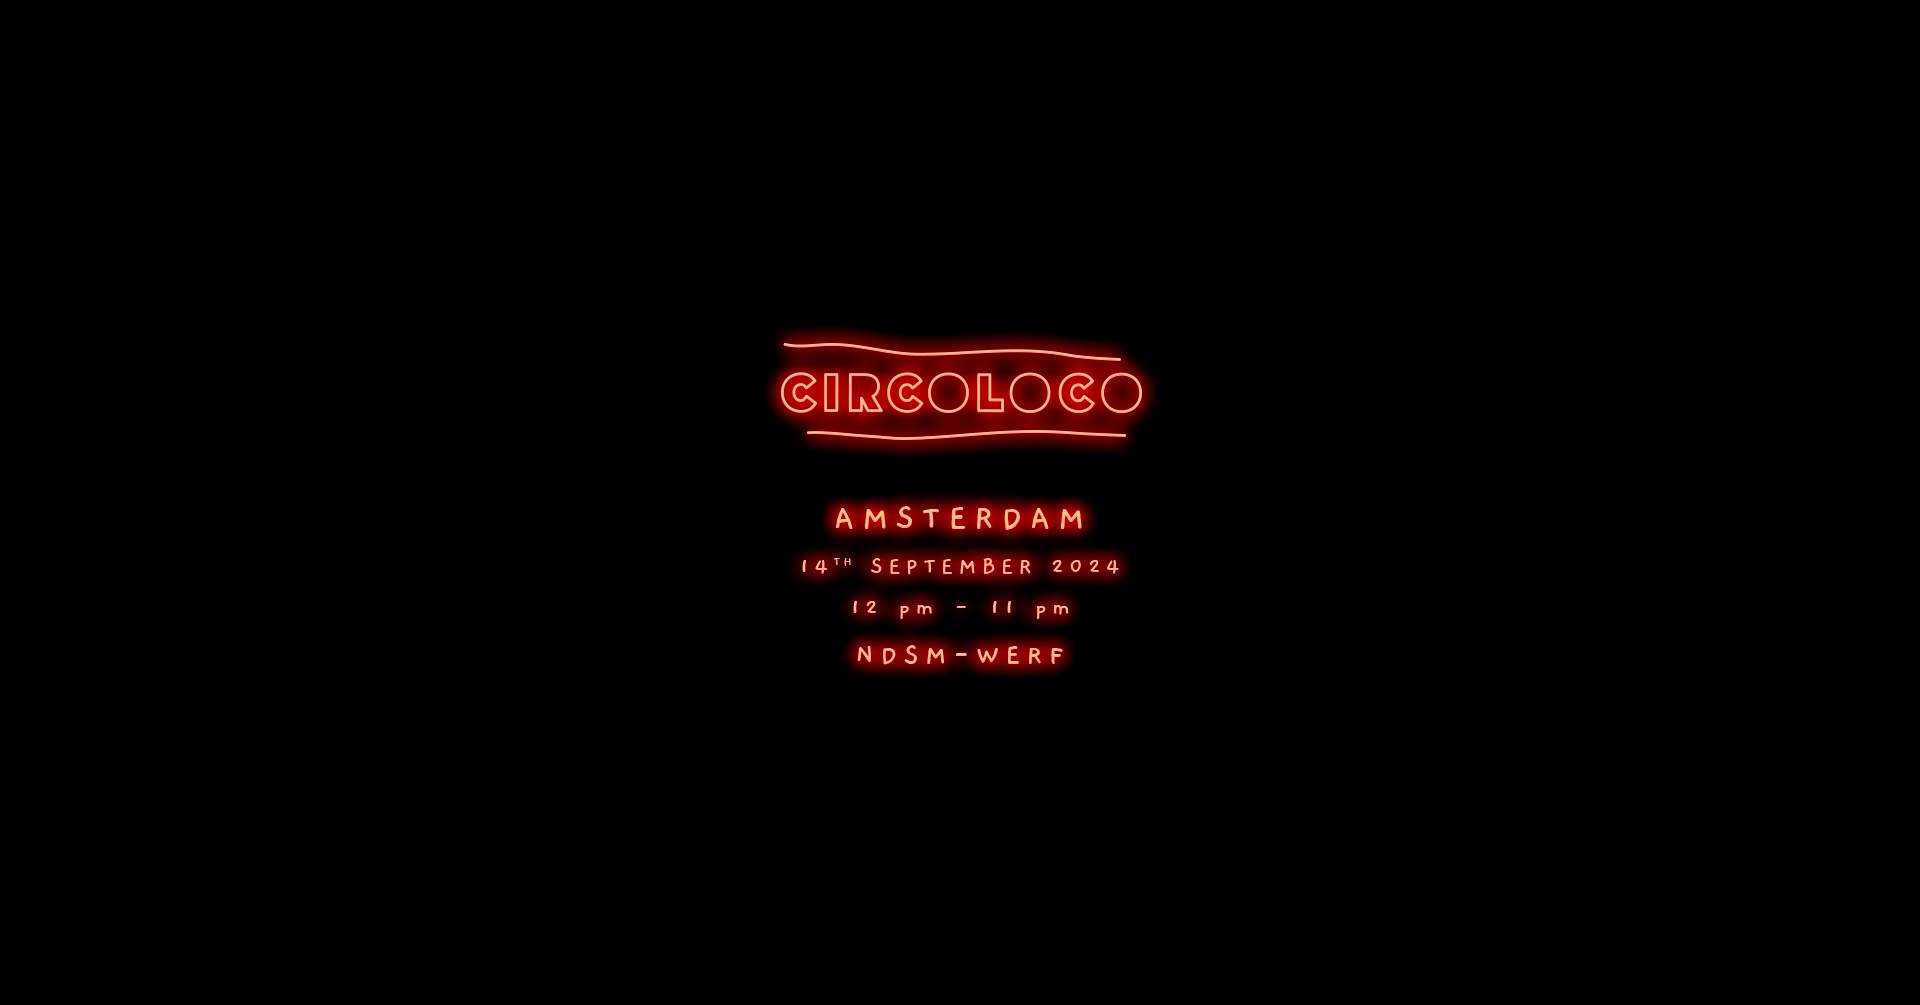 Circoloco Amsterdam - フライヤー表